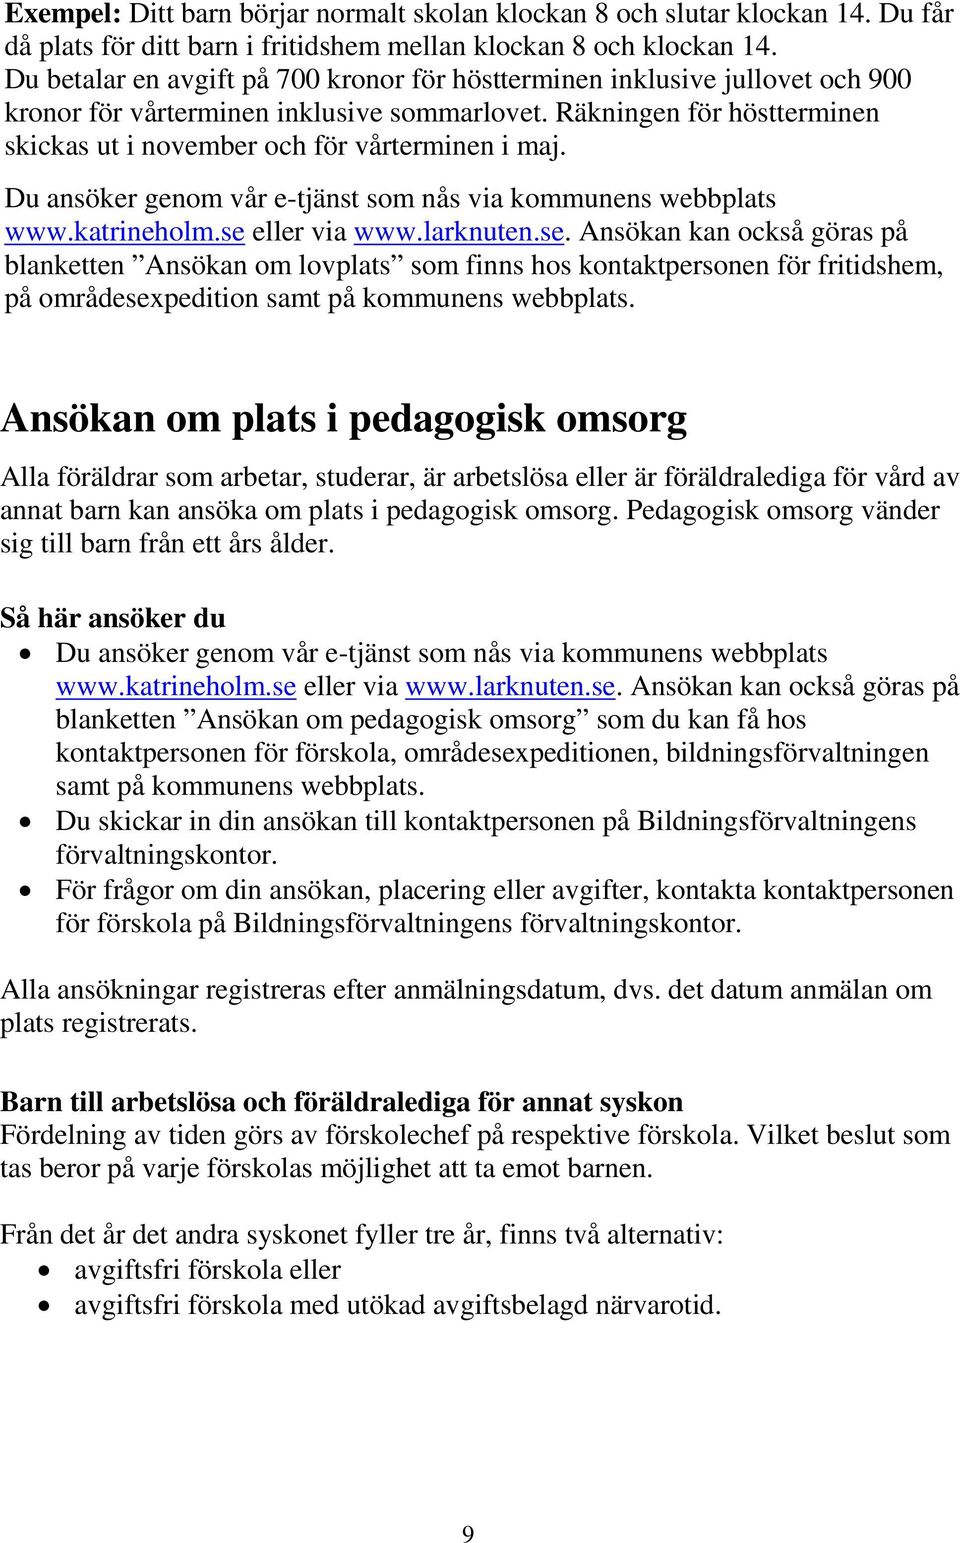 Du ansöker genom vår e-tjänst som nås via kommunens webbplats www.katrineholm.se 